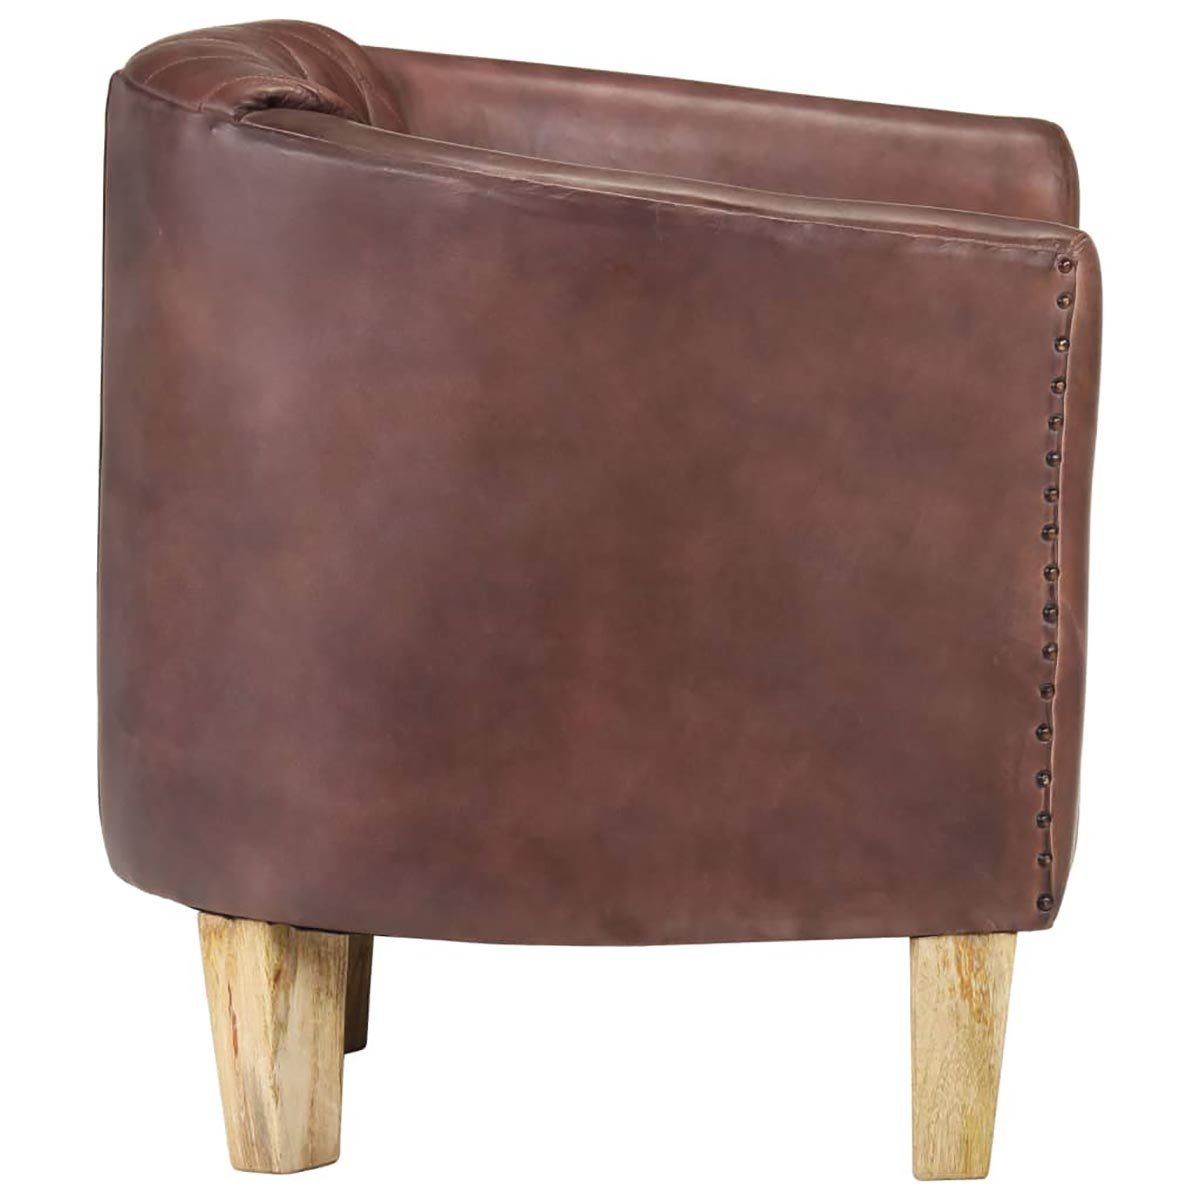 mit Tub Design Distressed Brown Chair stilvollem Echtleder DOTMALL Stuhl